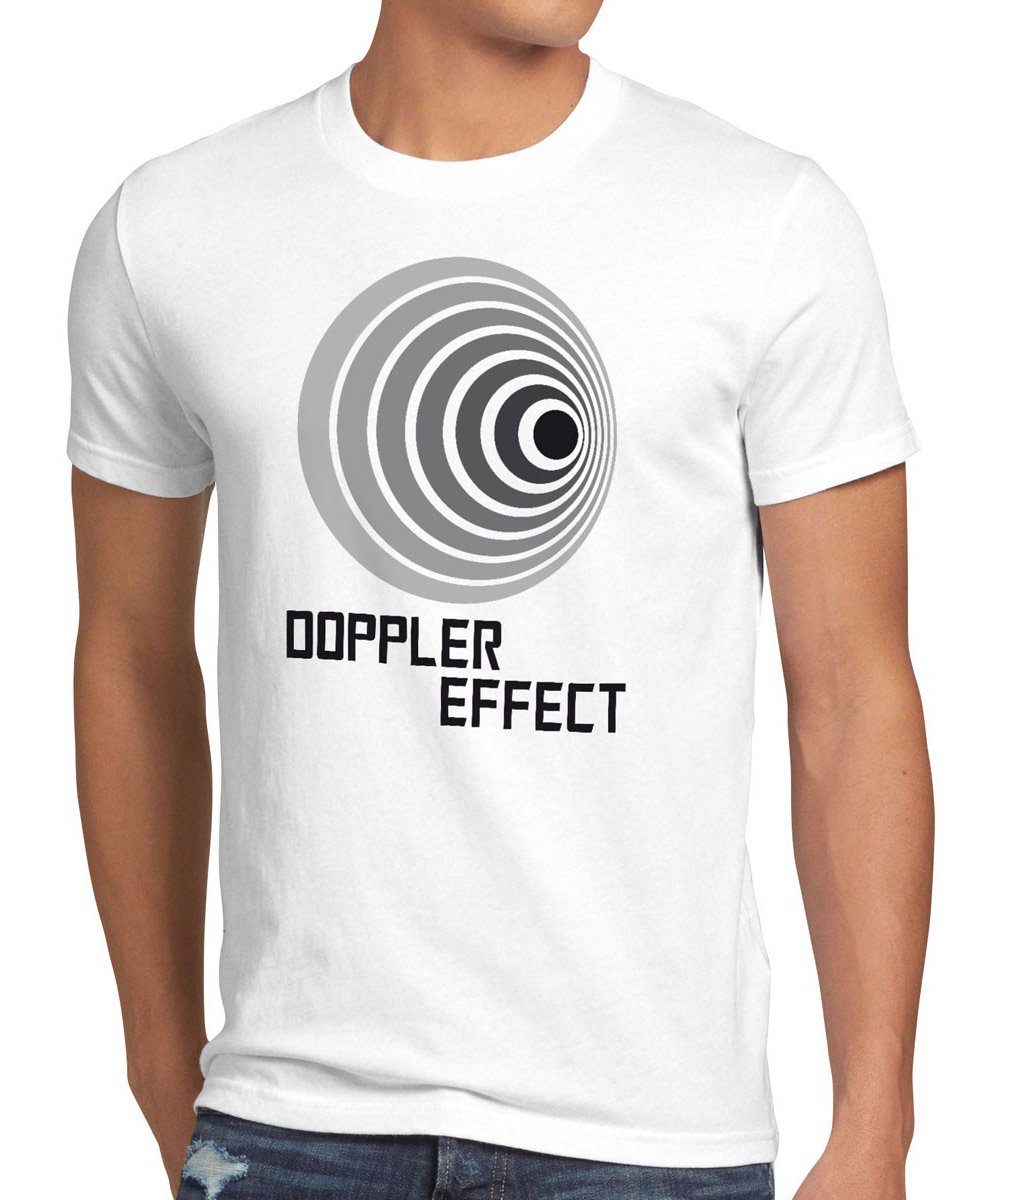 style3 Print-Shirt Herren T-Shirt Bang Effect weiß Theory Sheldon Effekt Cooper tbbt Schall Big Doppler